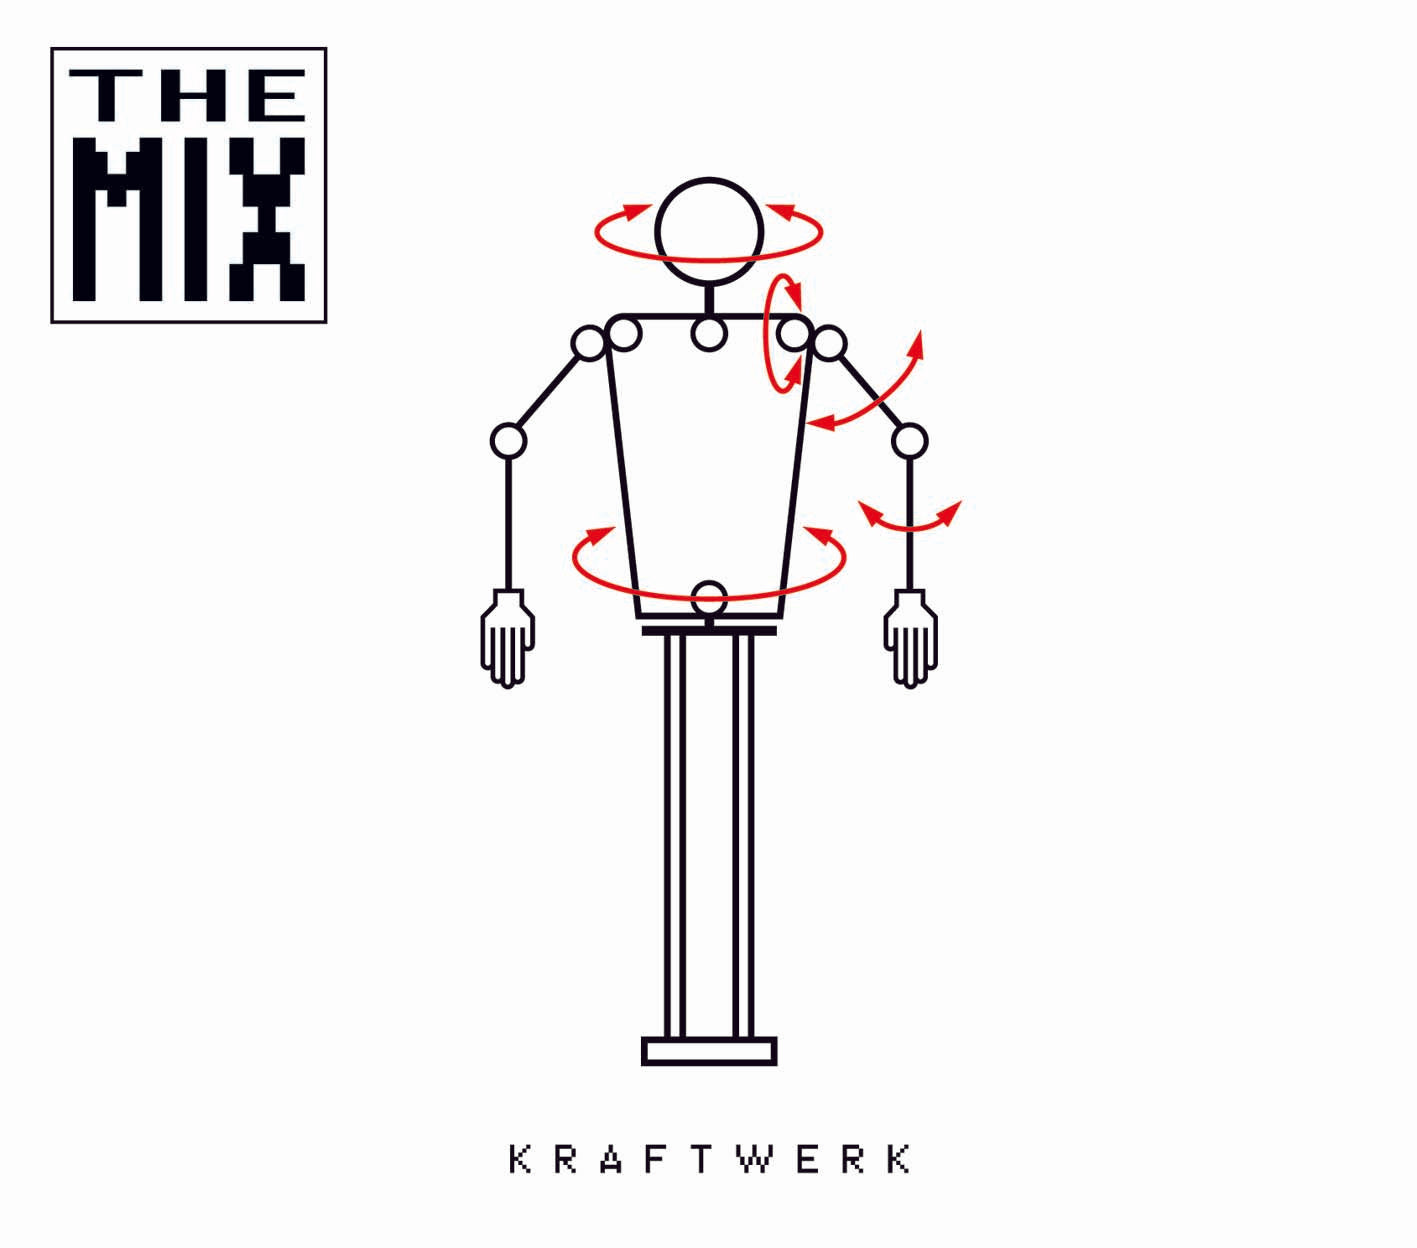 Kraftwerk/THE MIX